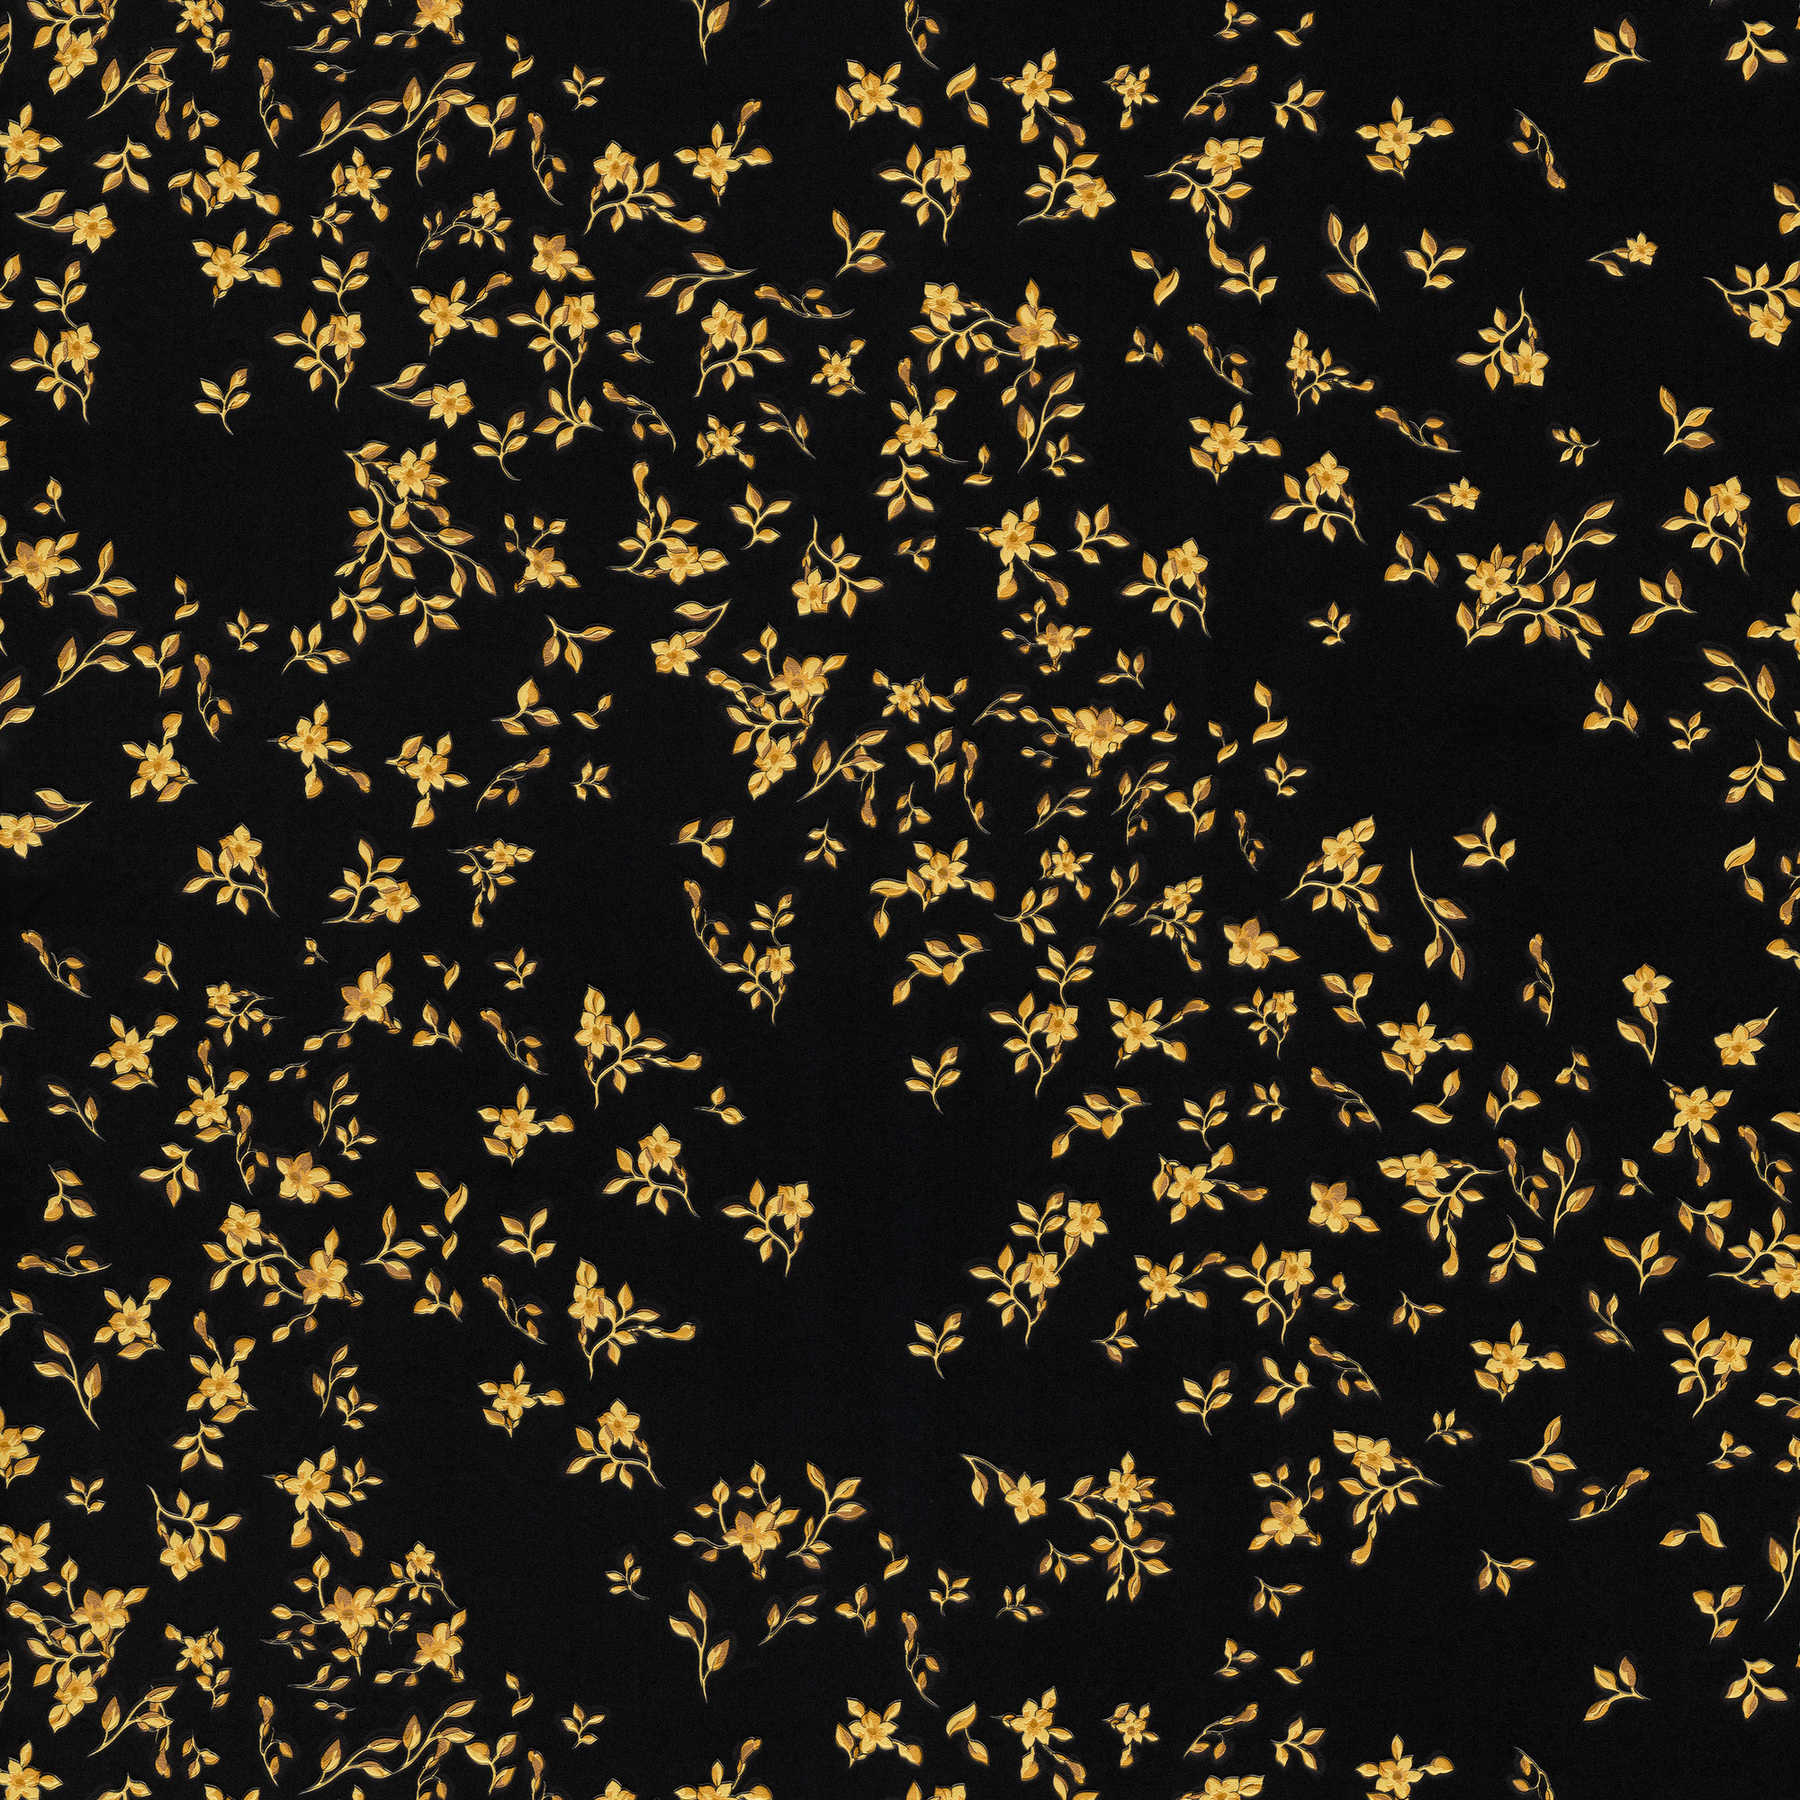 Zwart VERSACE-behang met bloemmotief - zwart, goud
